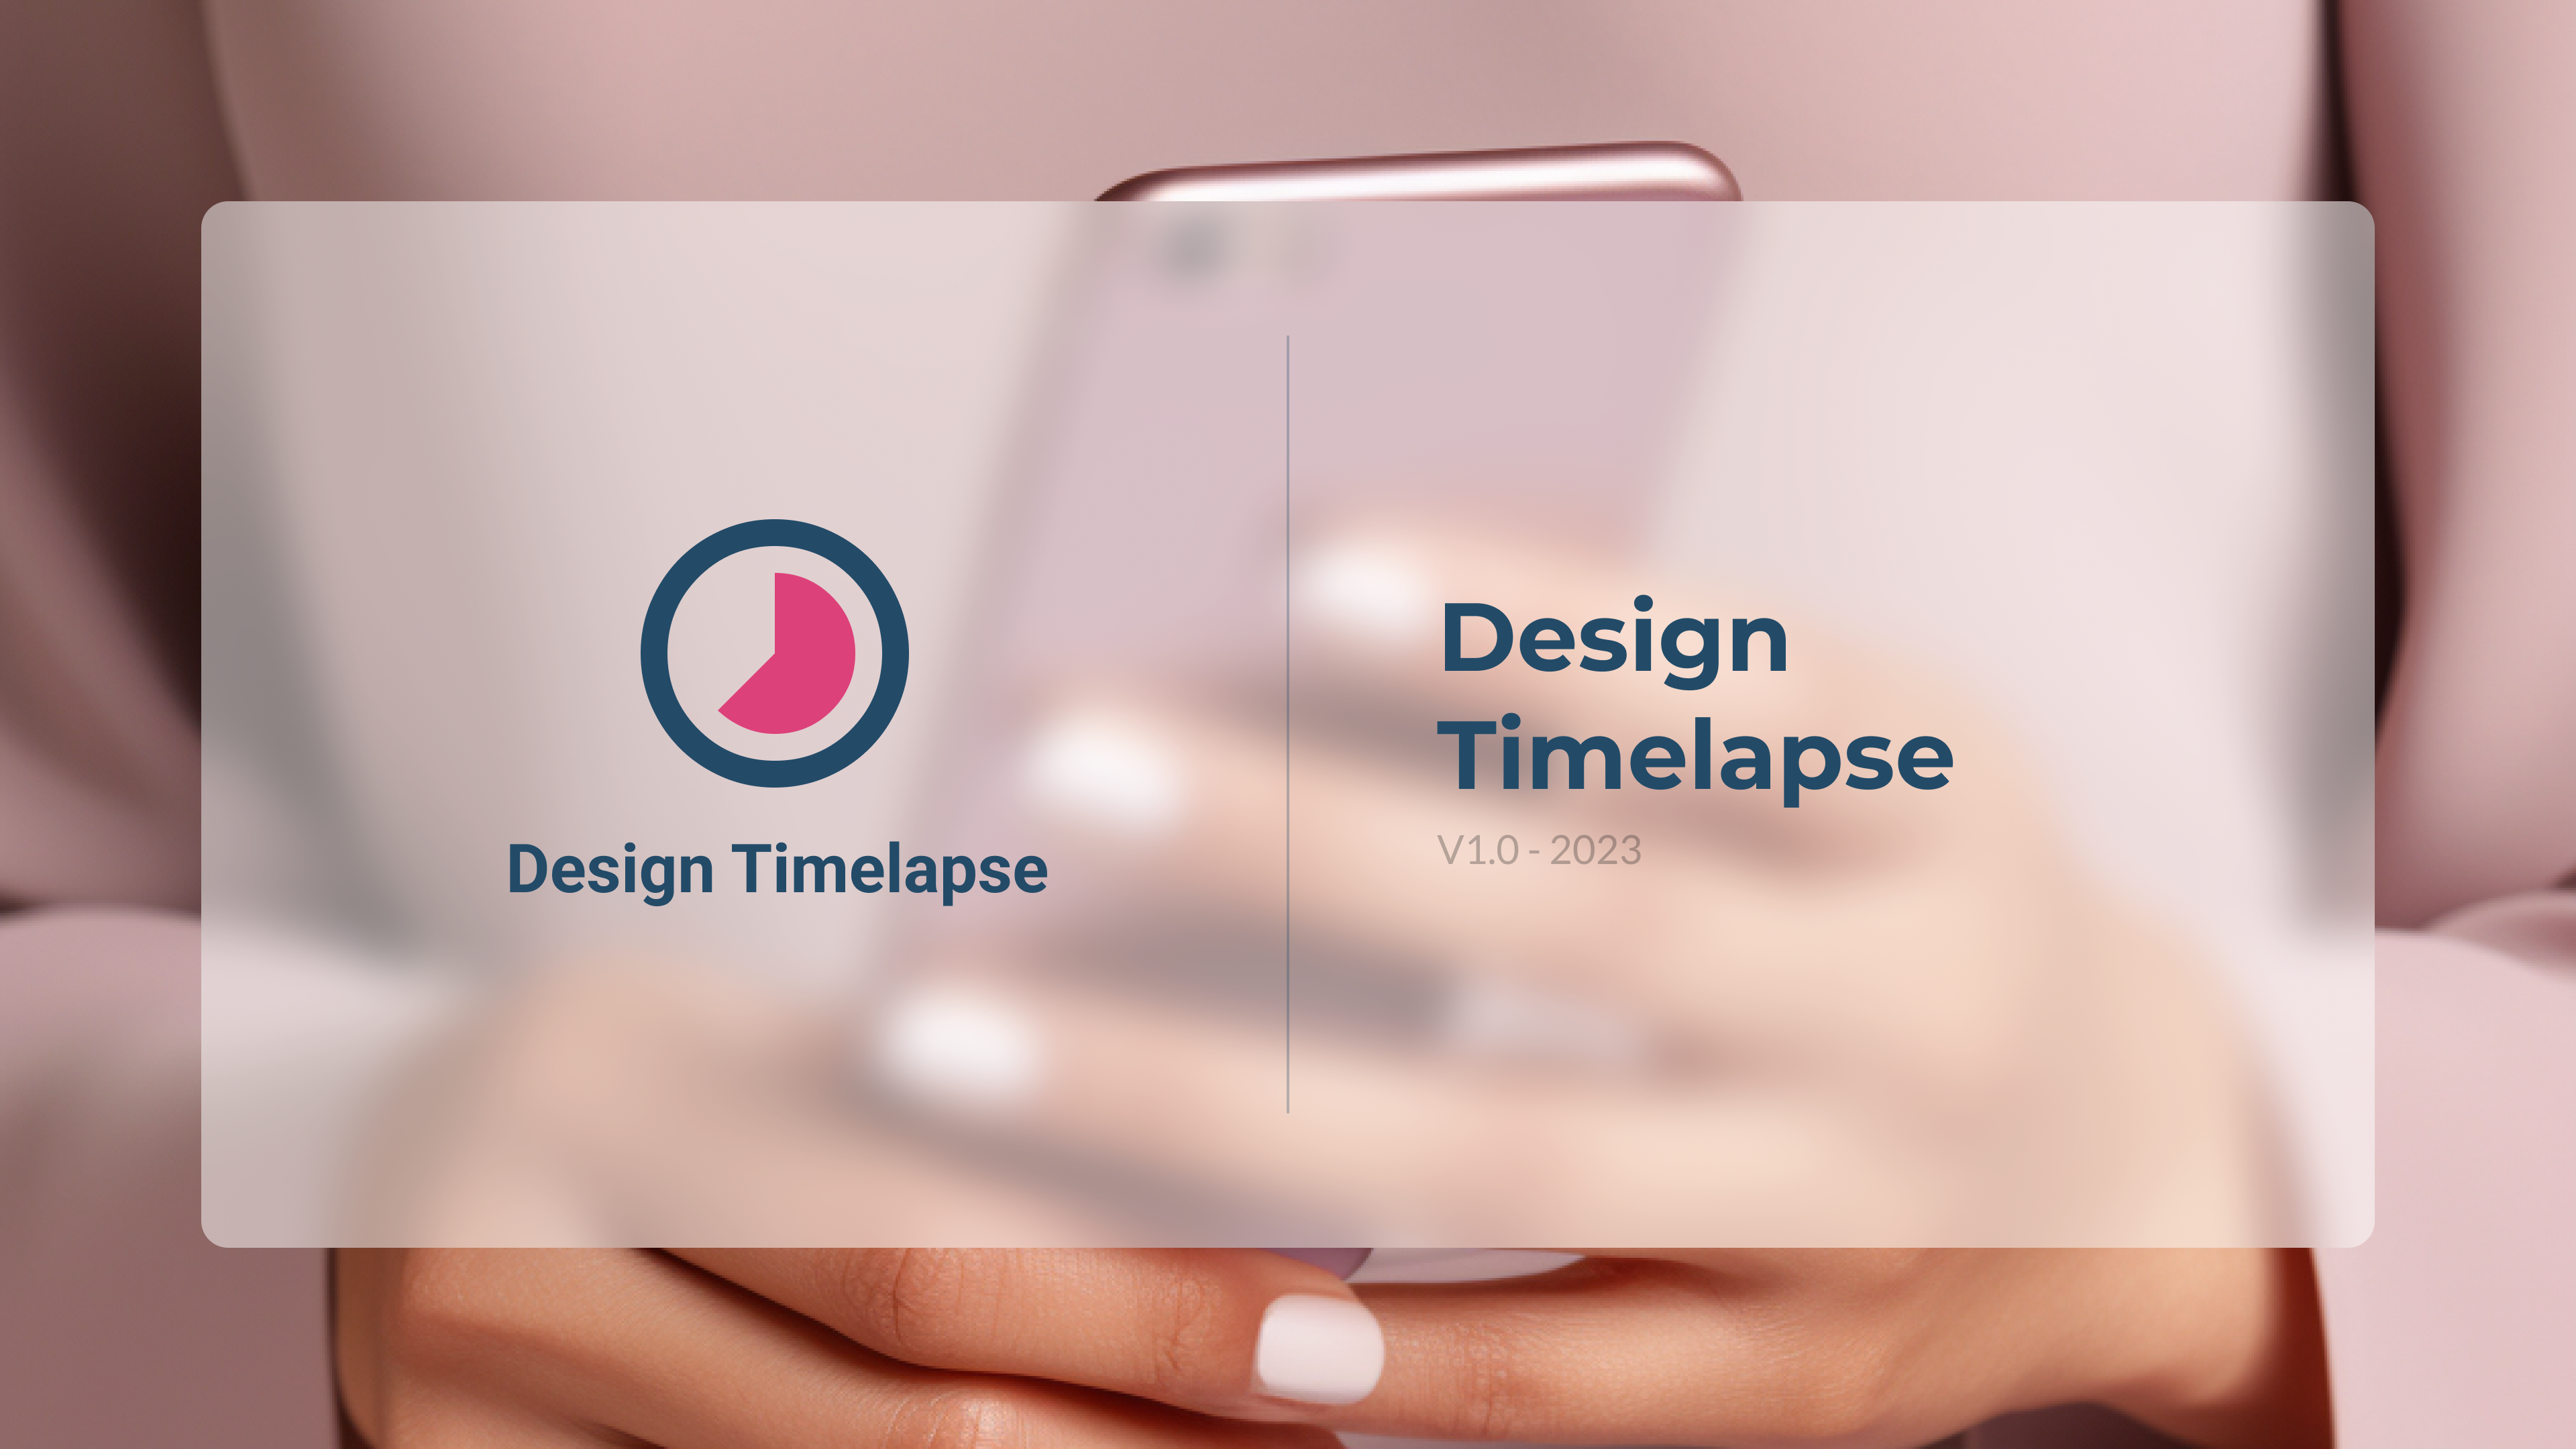 установить плагин для Фигмы Design Timelapse